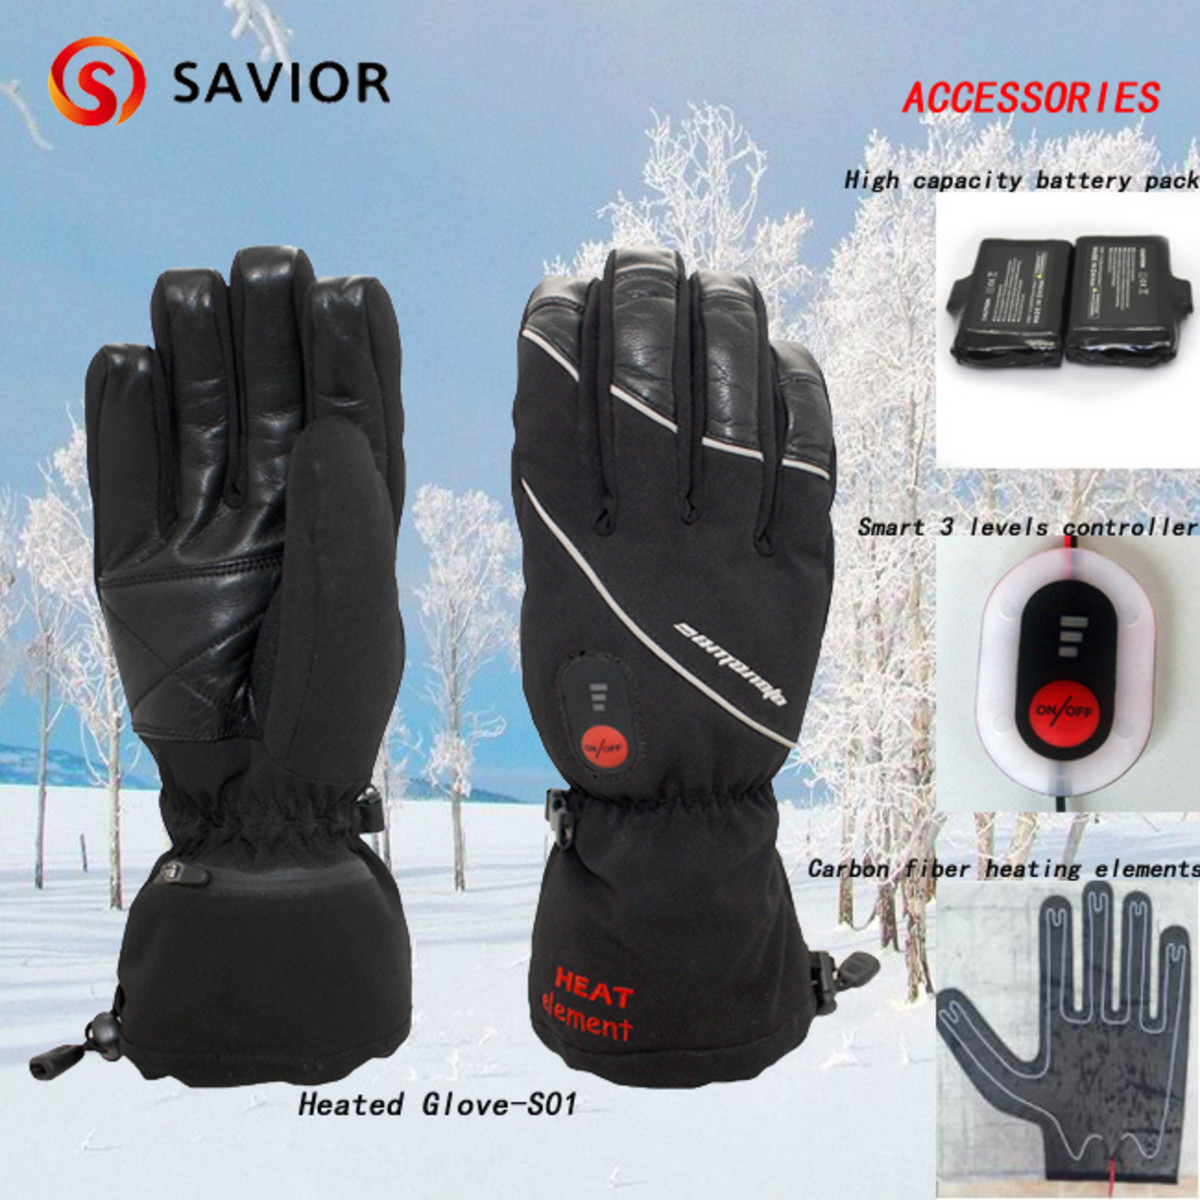 Savior Heated Glove